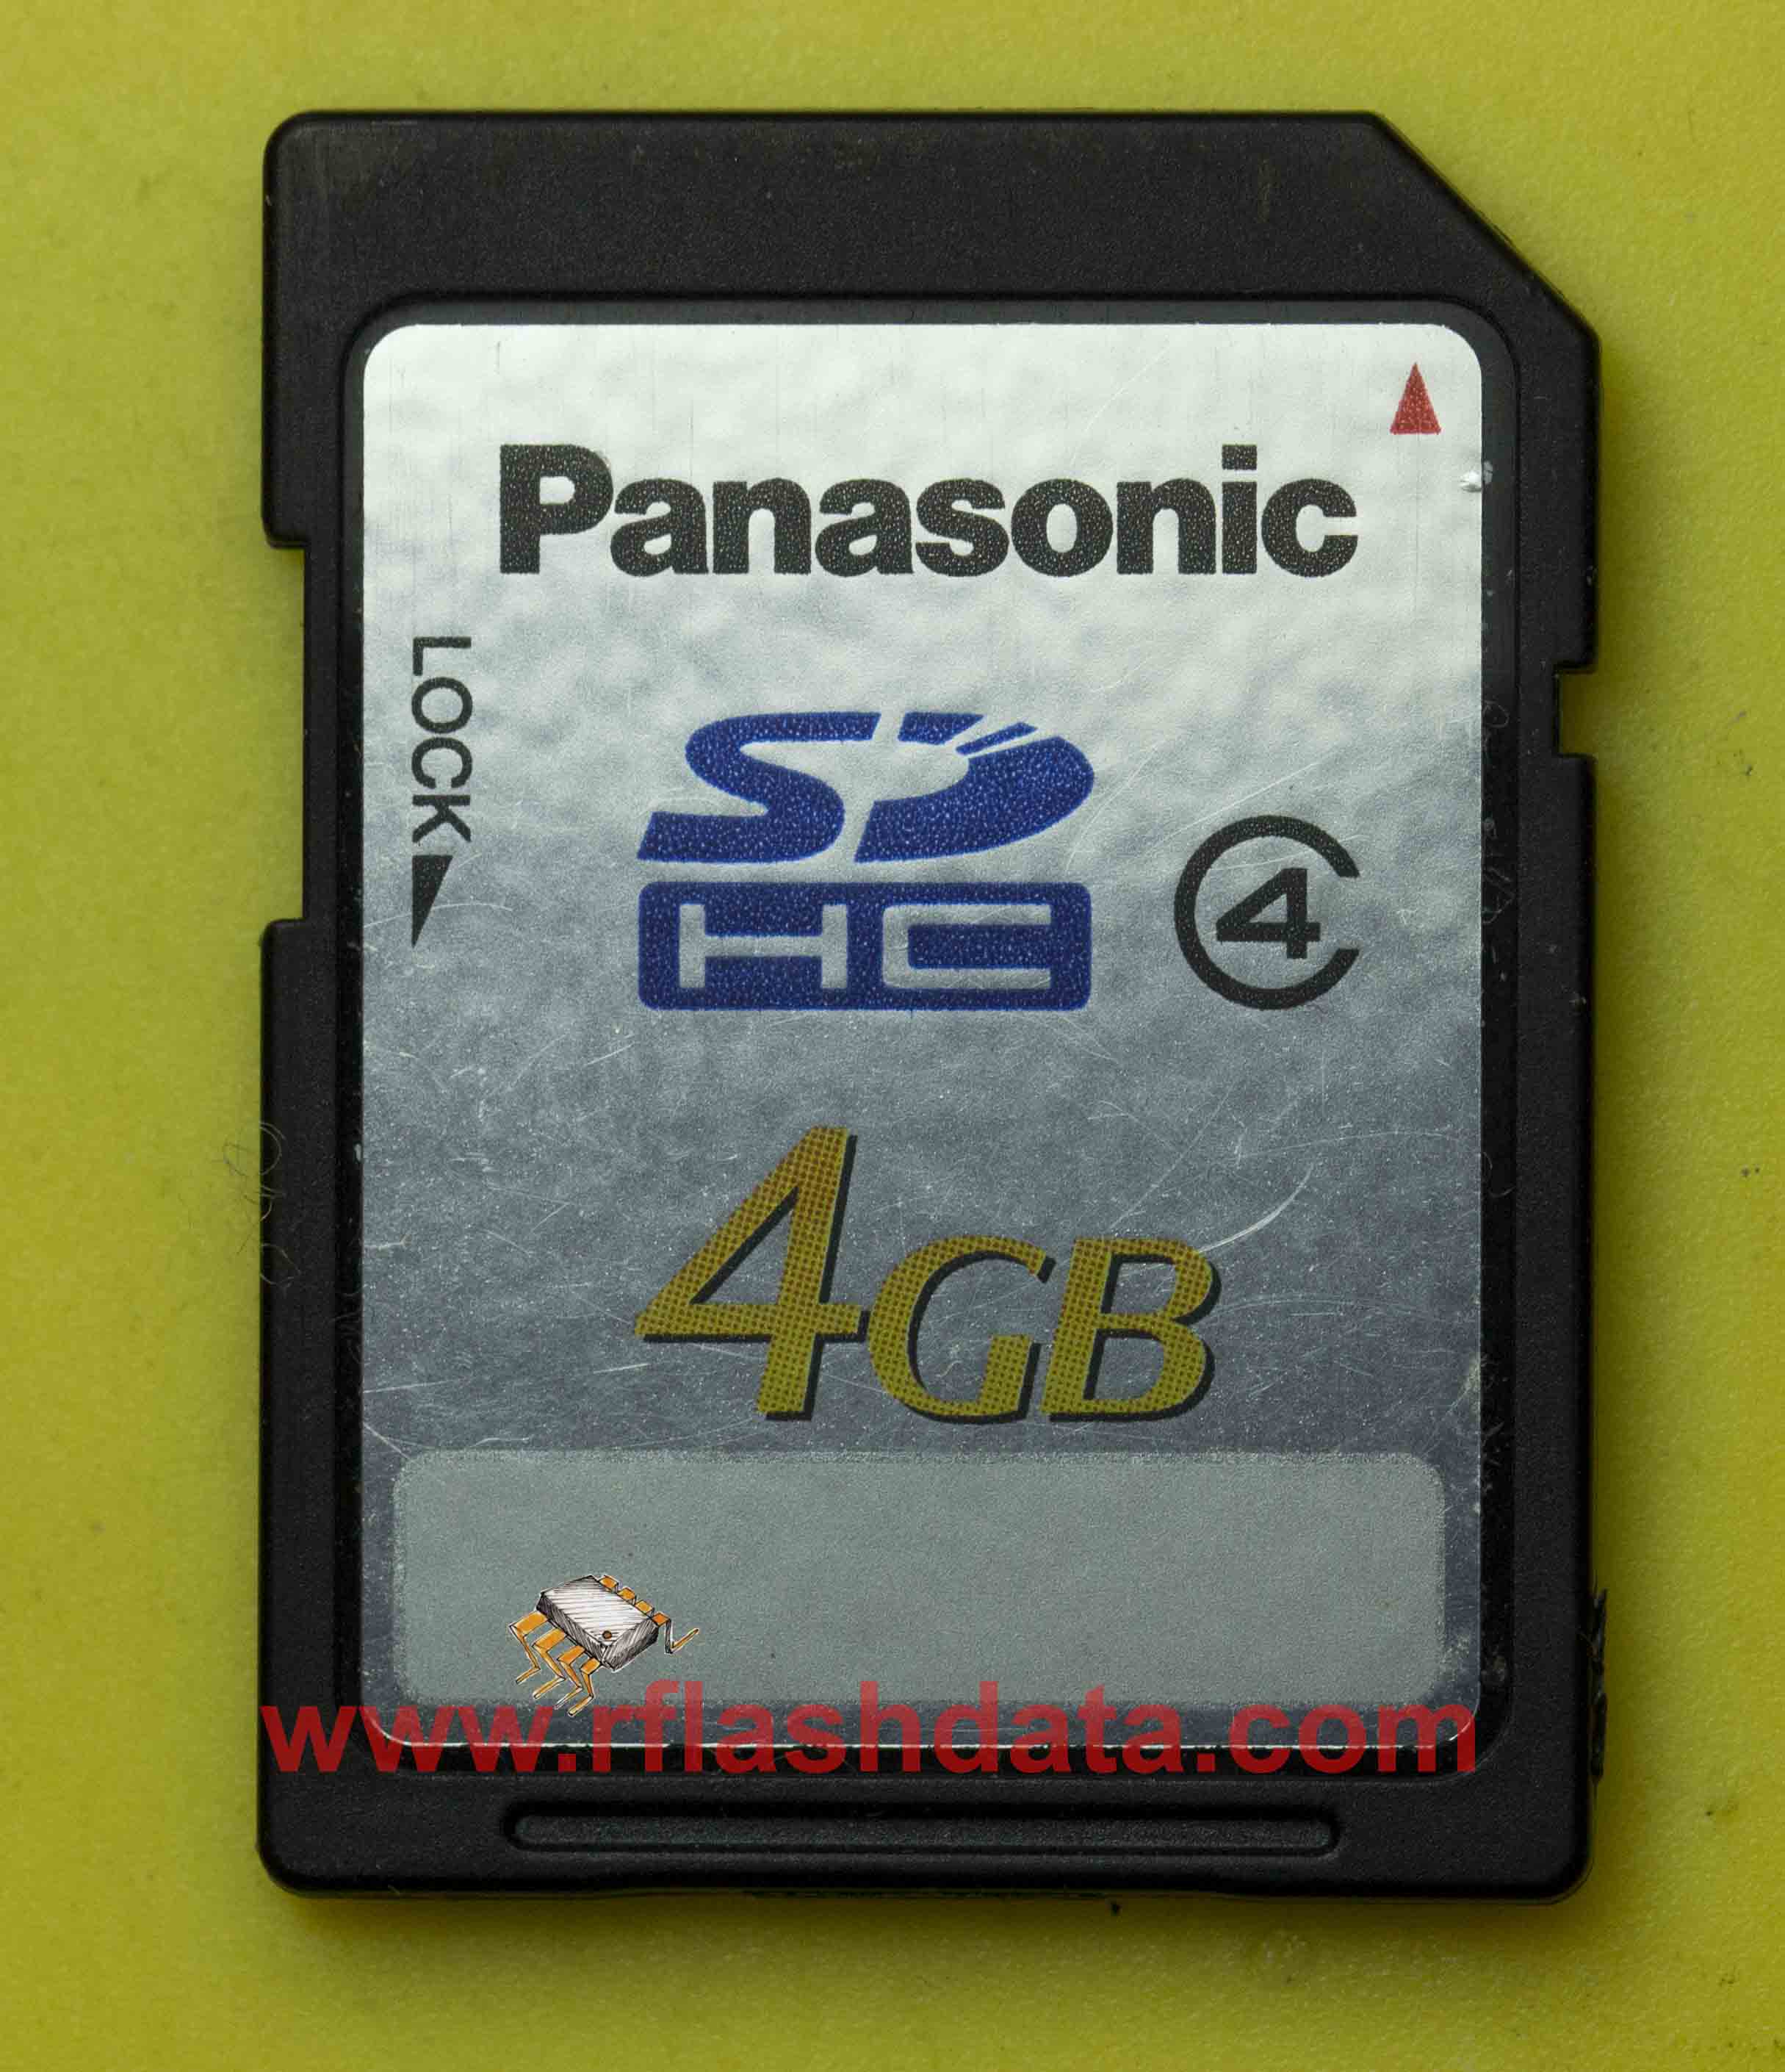 Panasonic SD memory card